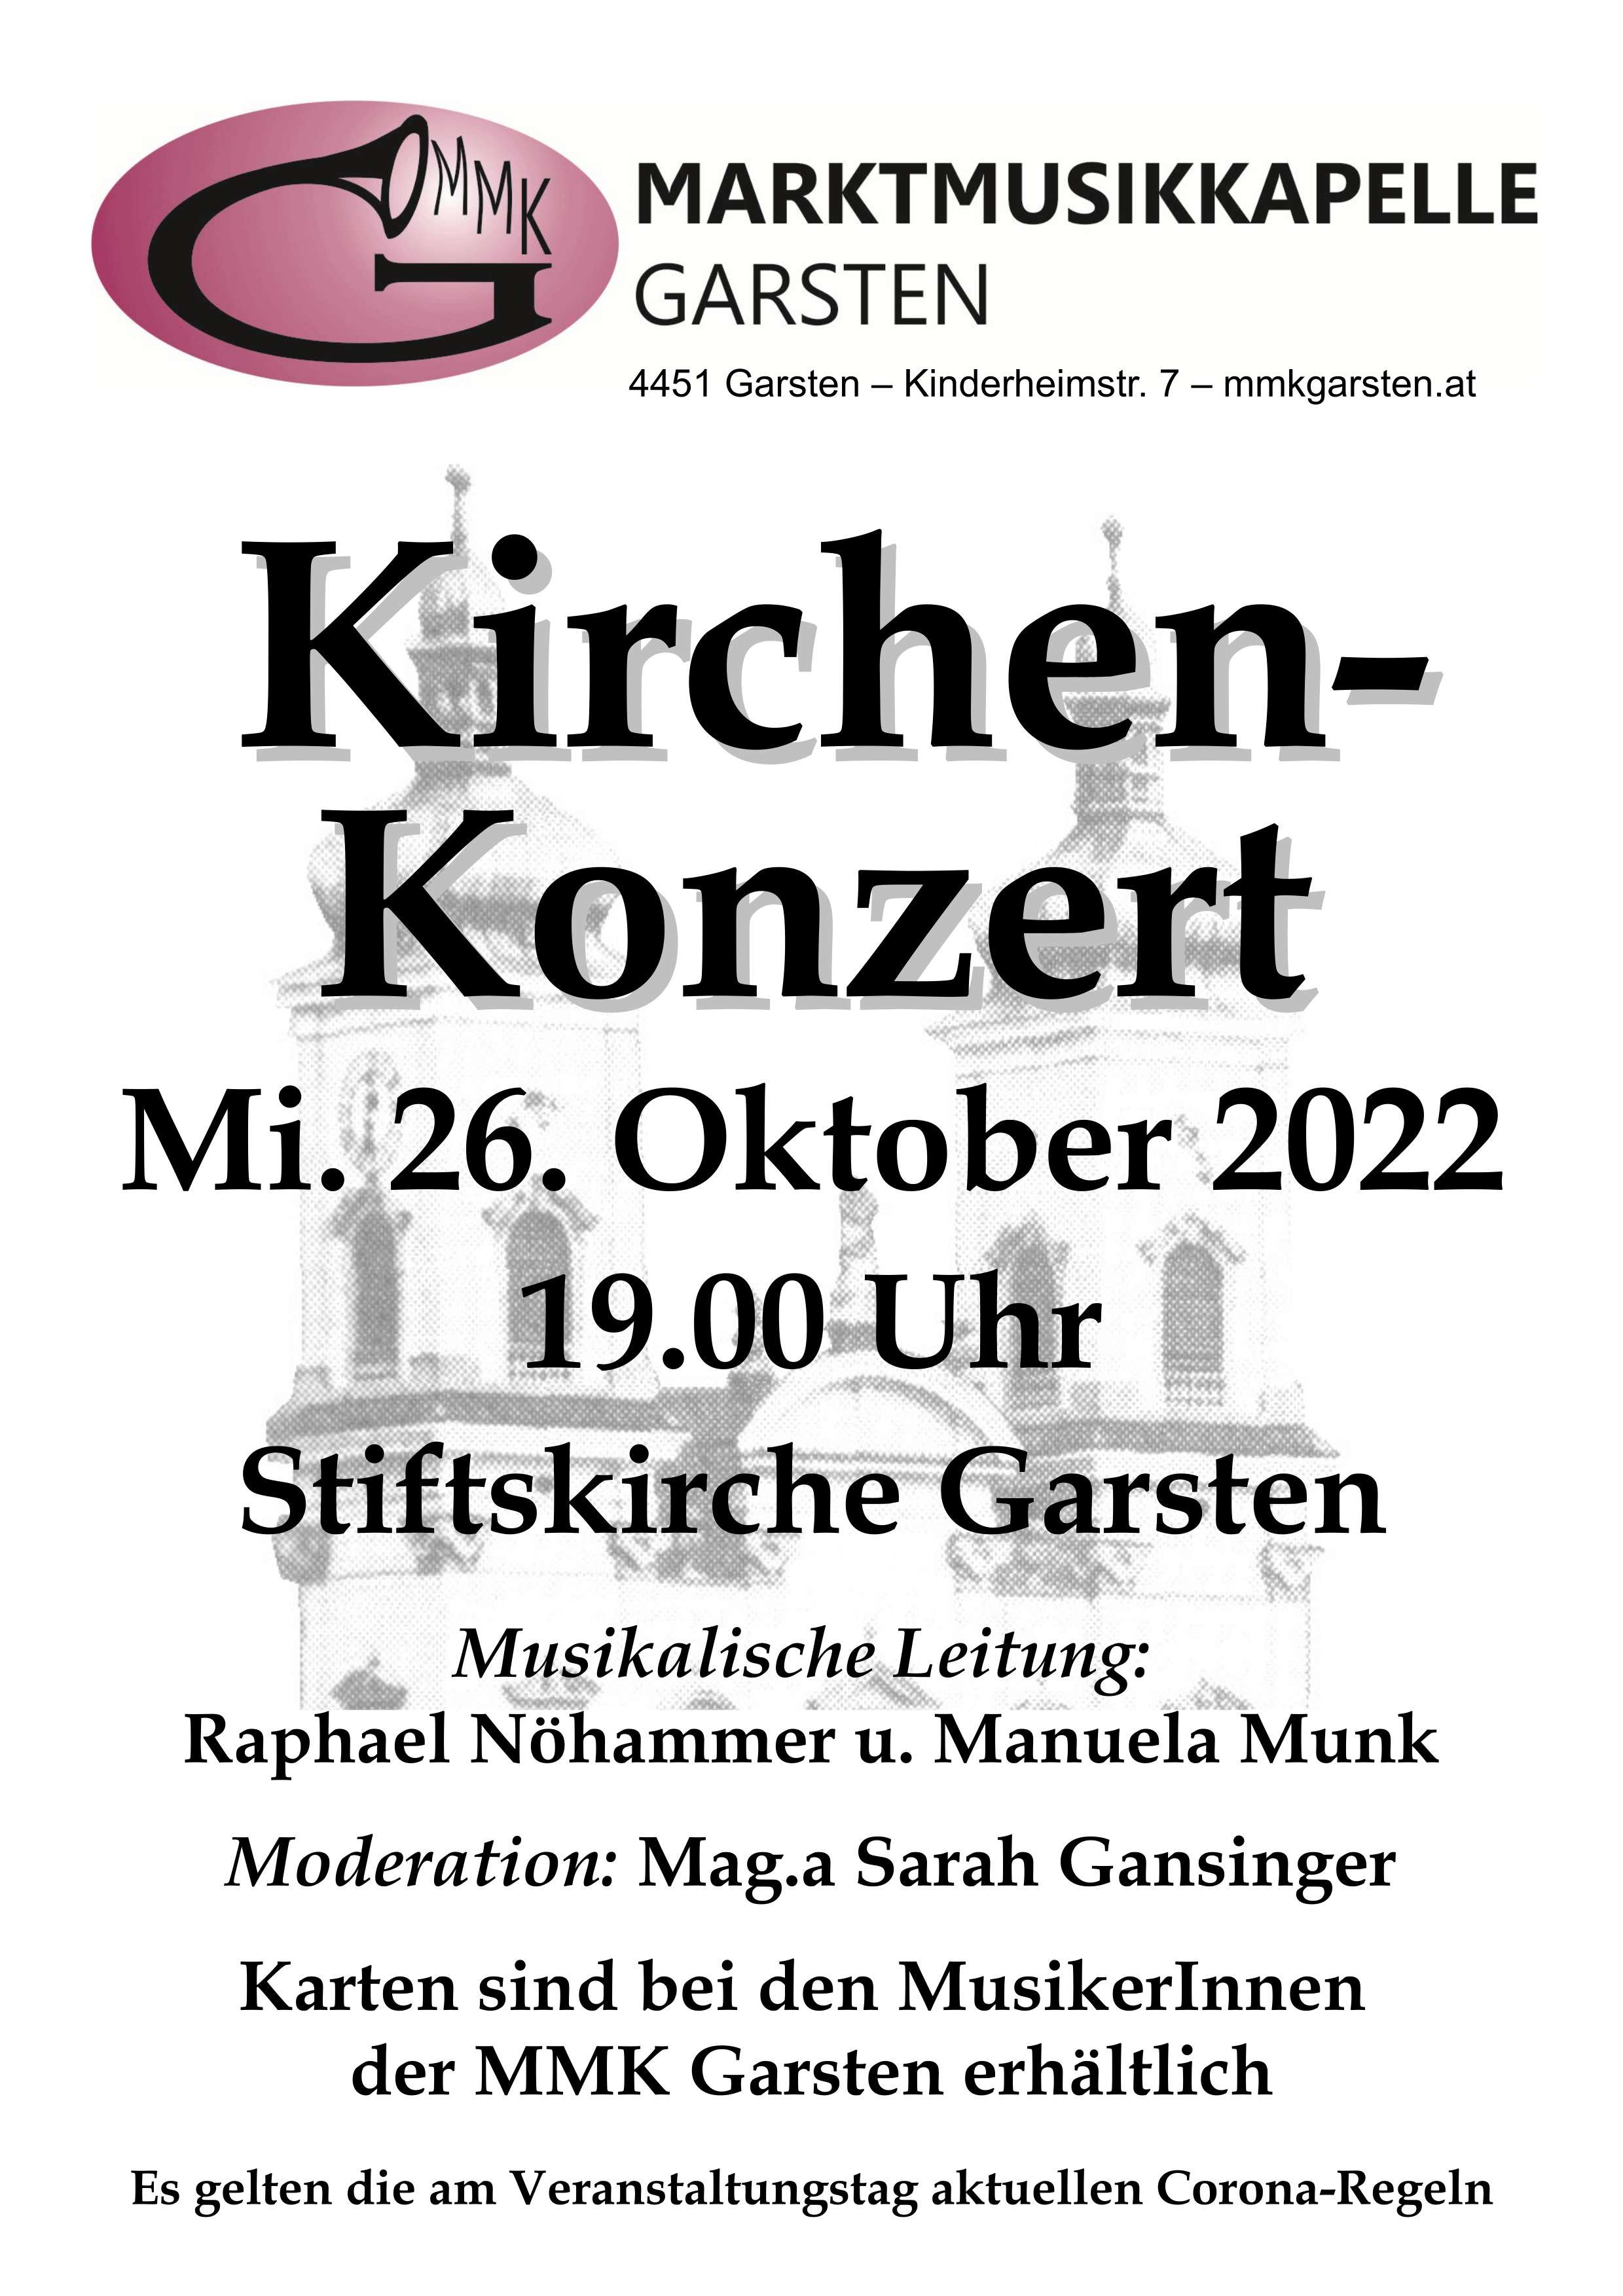 Kirchenkonzert Mittwoch 26. Oktober 2022 19:00 Uhr in der Stiftskirche Garsten